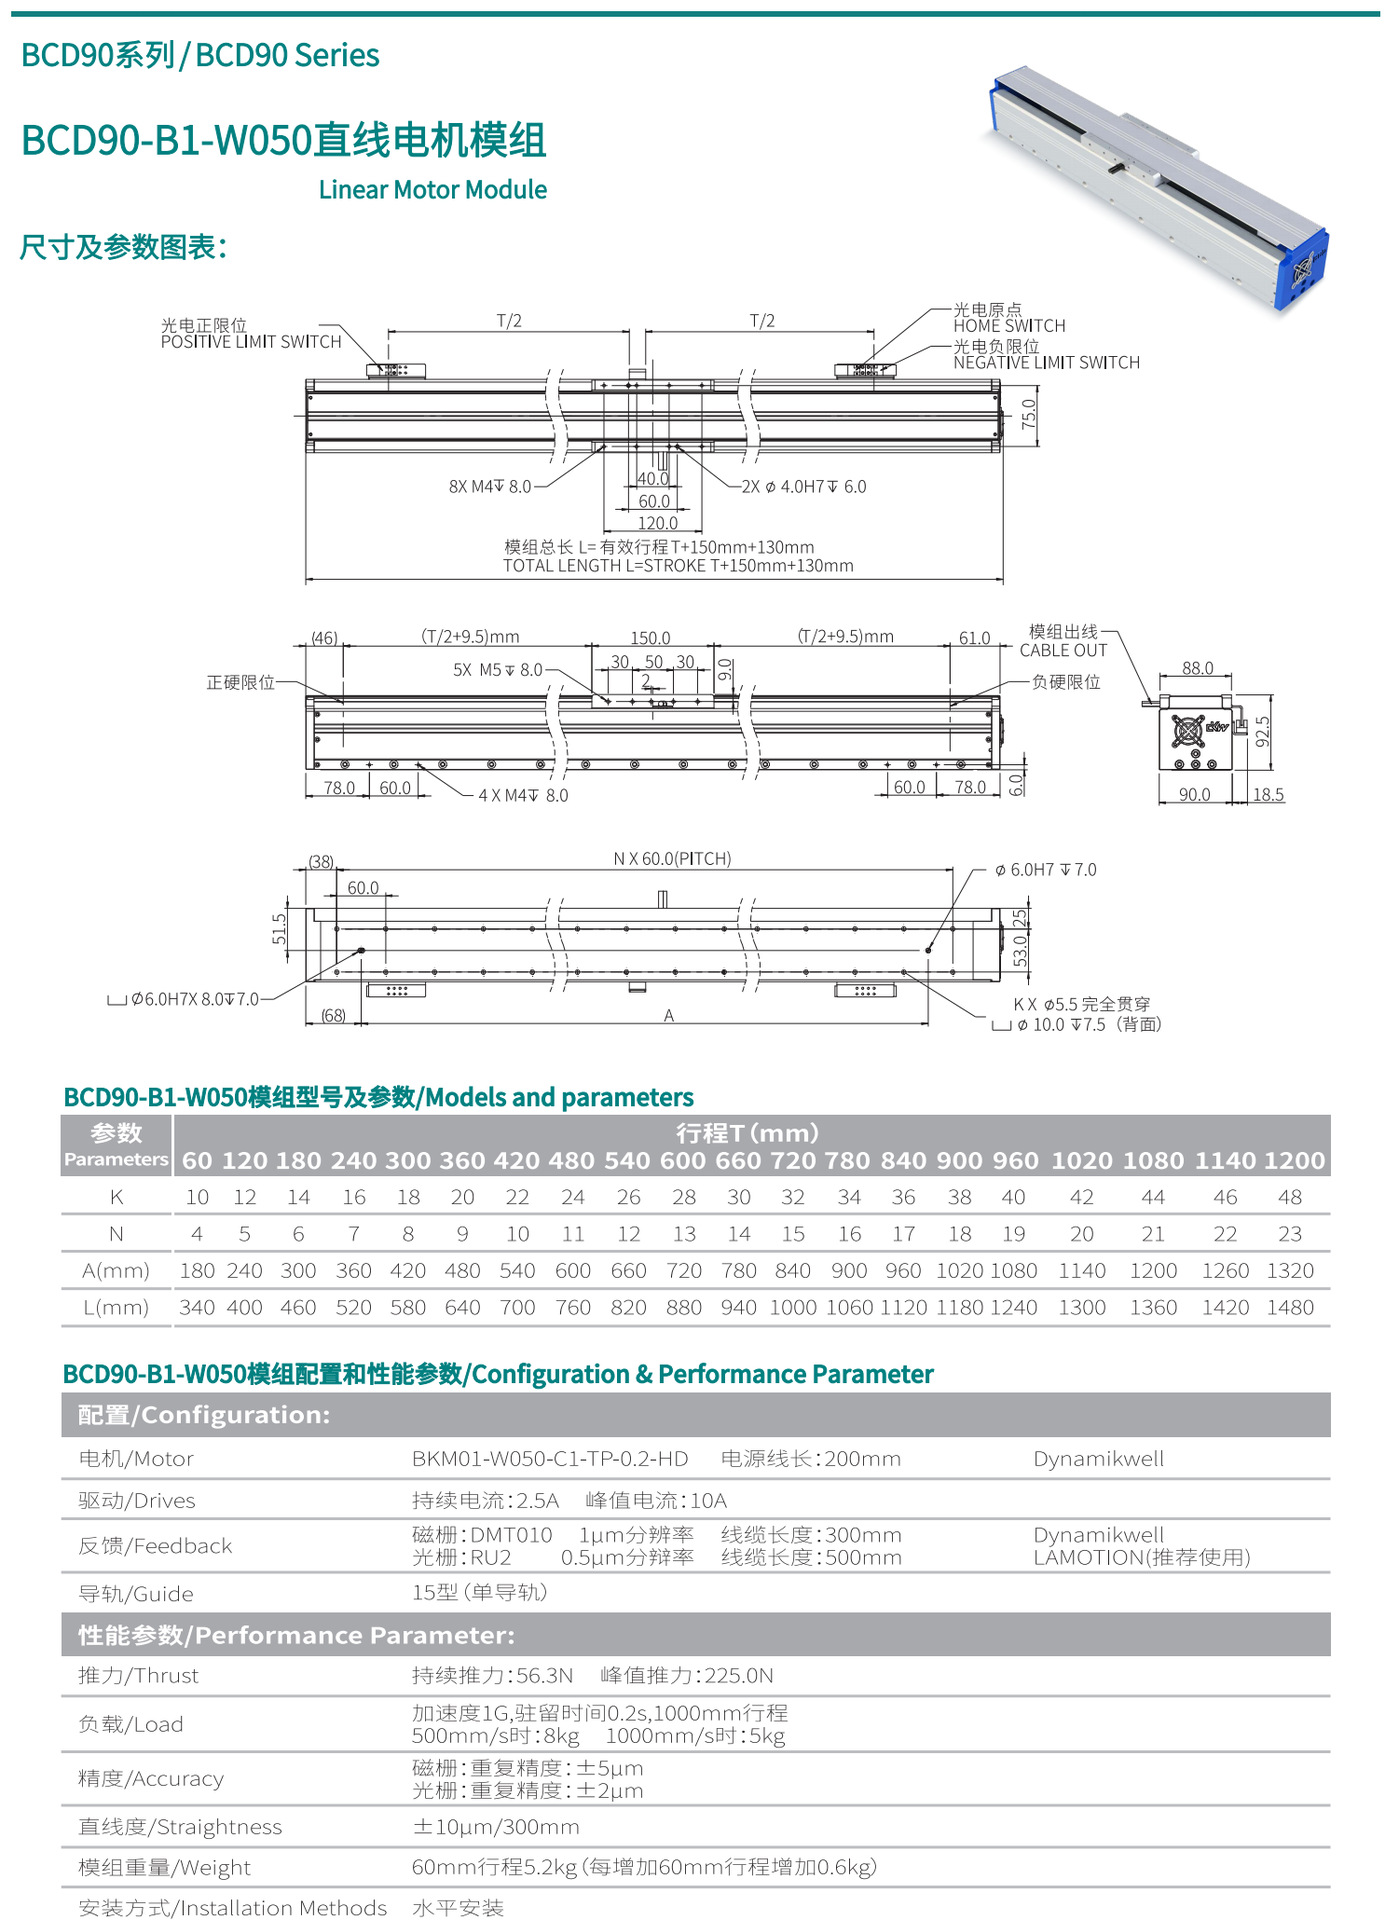 直线电机模组BCD90-B1-W050